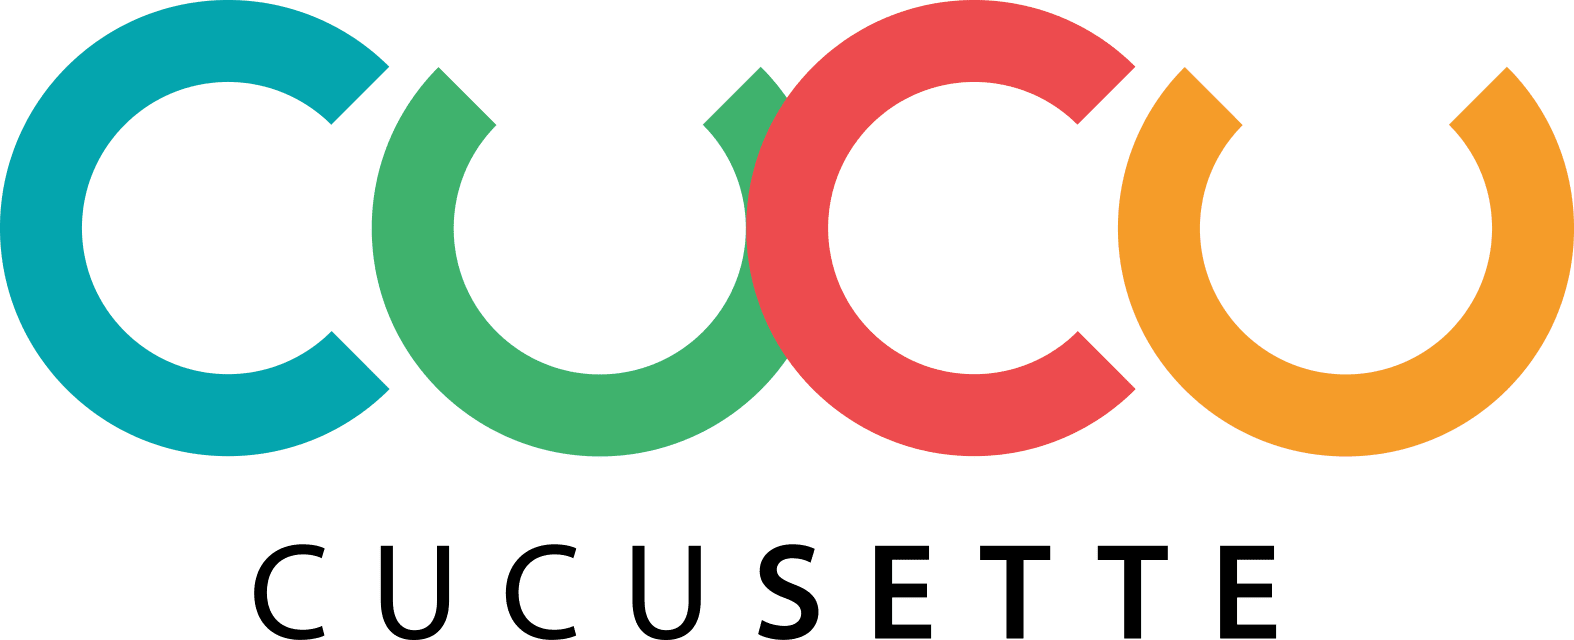 cucusette